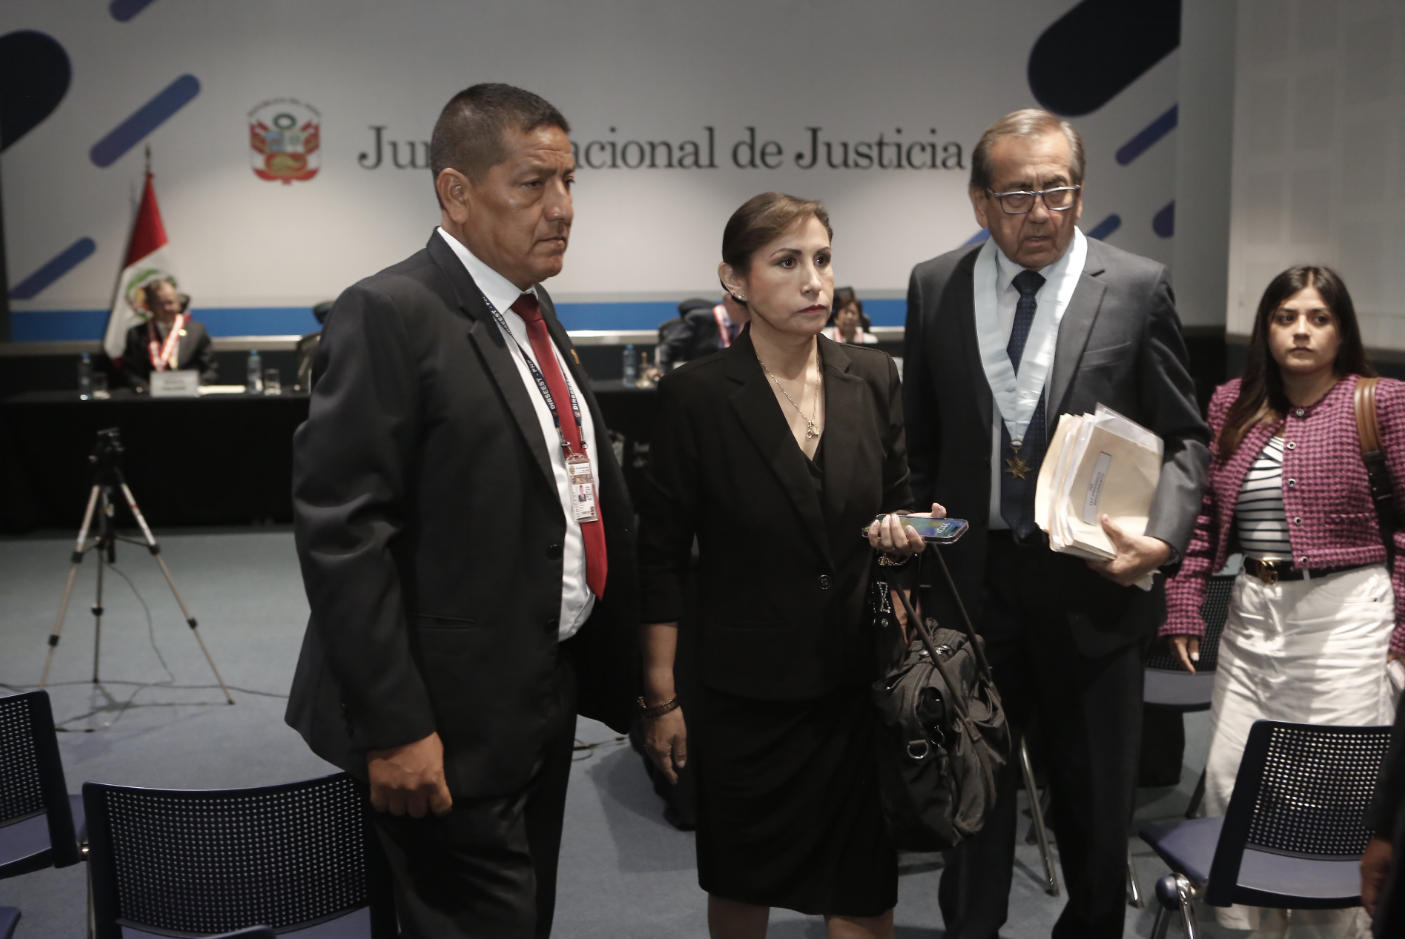 
                                 Patricia Benavides: Fiscalía solicita nueva audiencia de impedimento de salida del país tras viaje a Chile 
                            